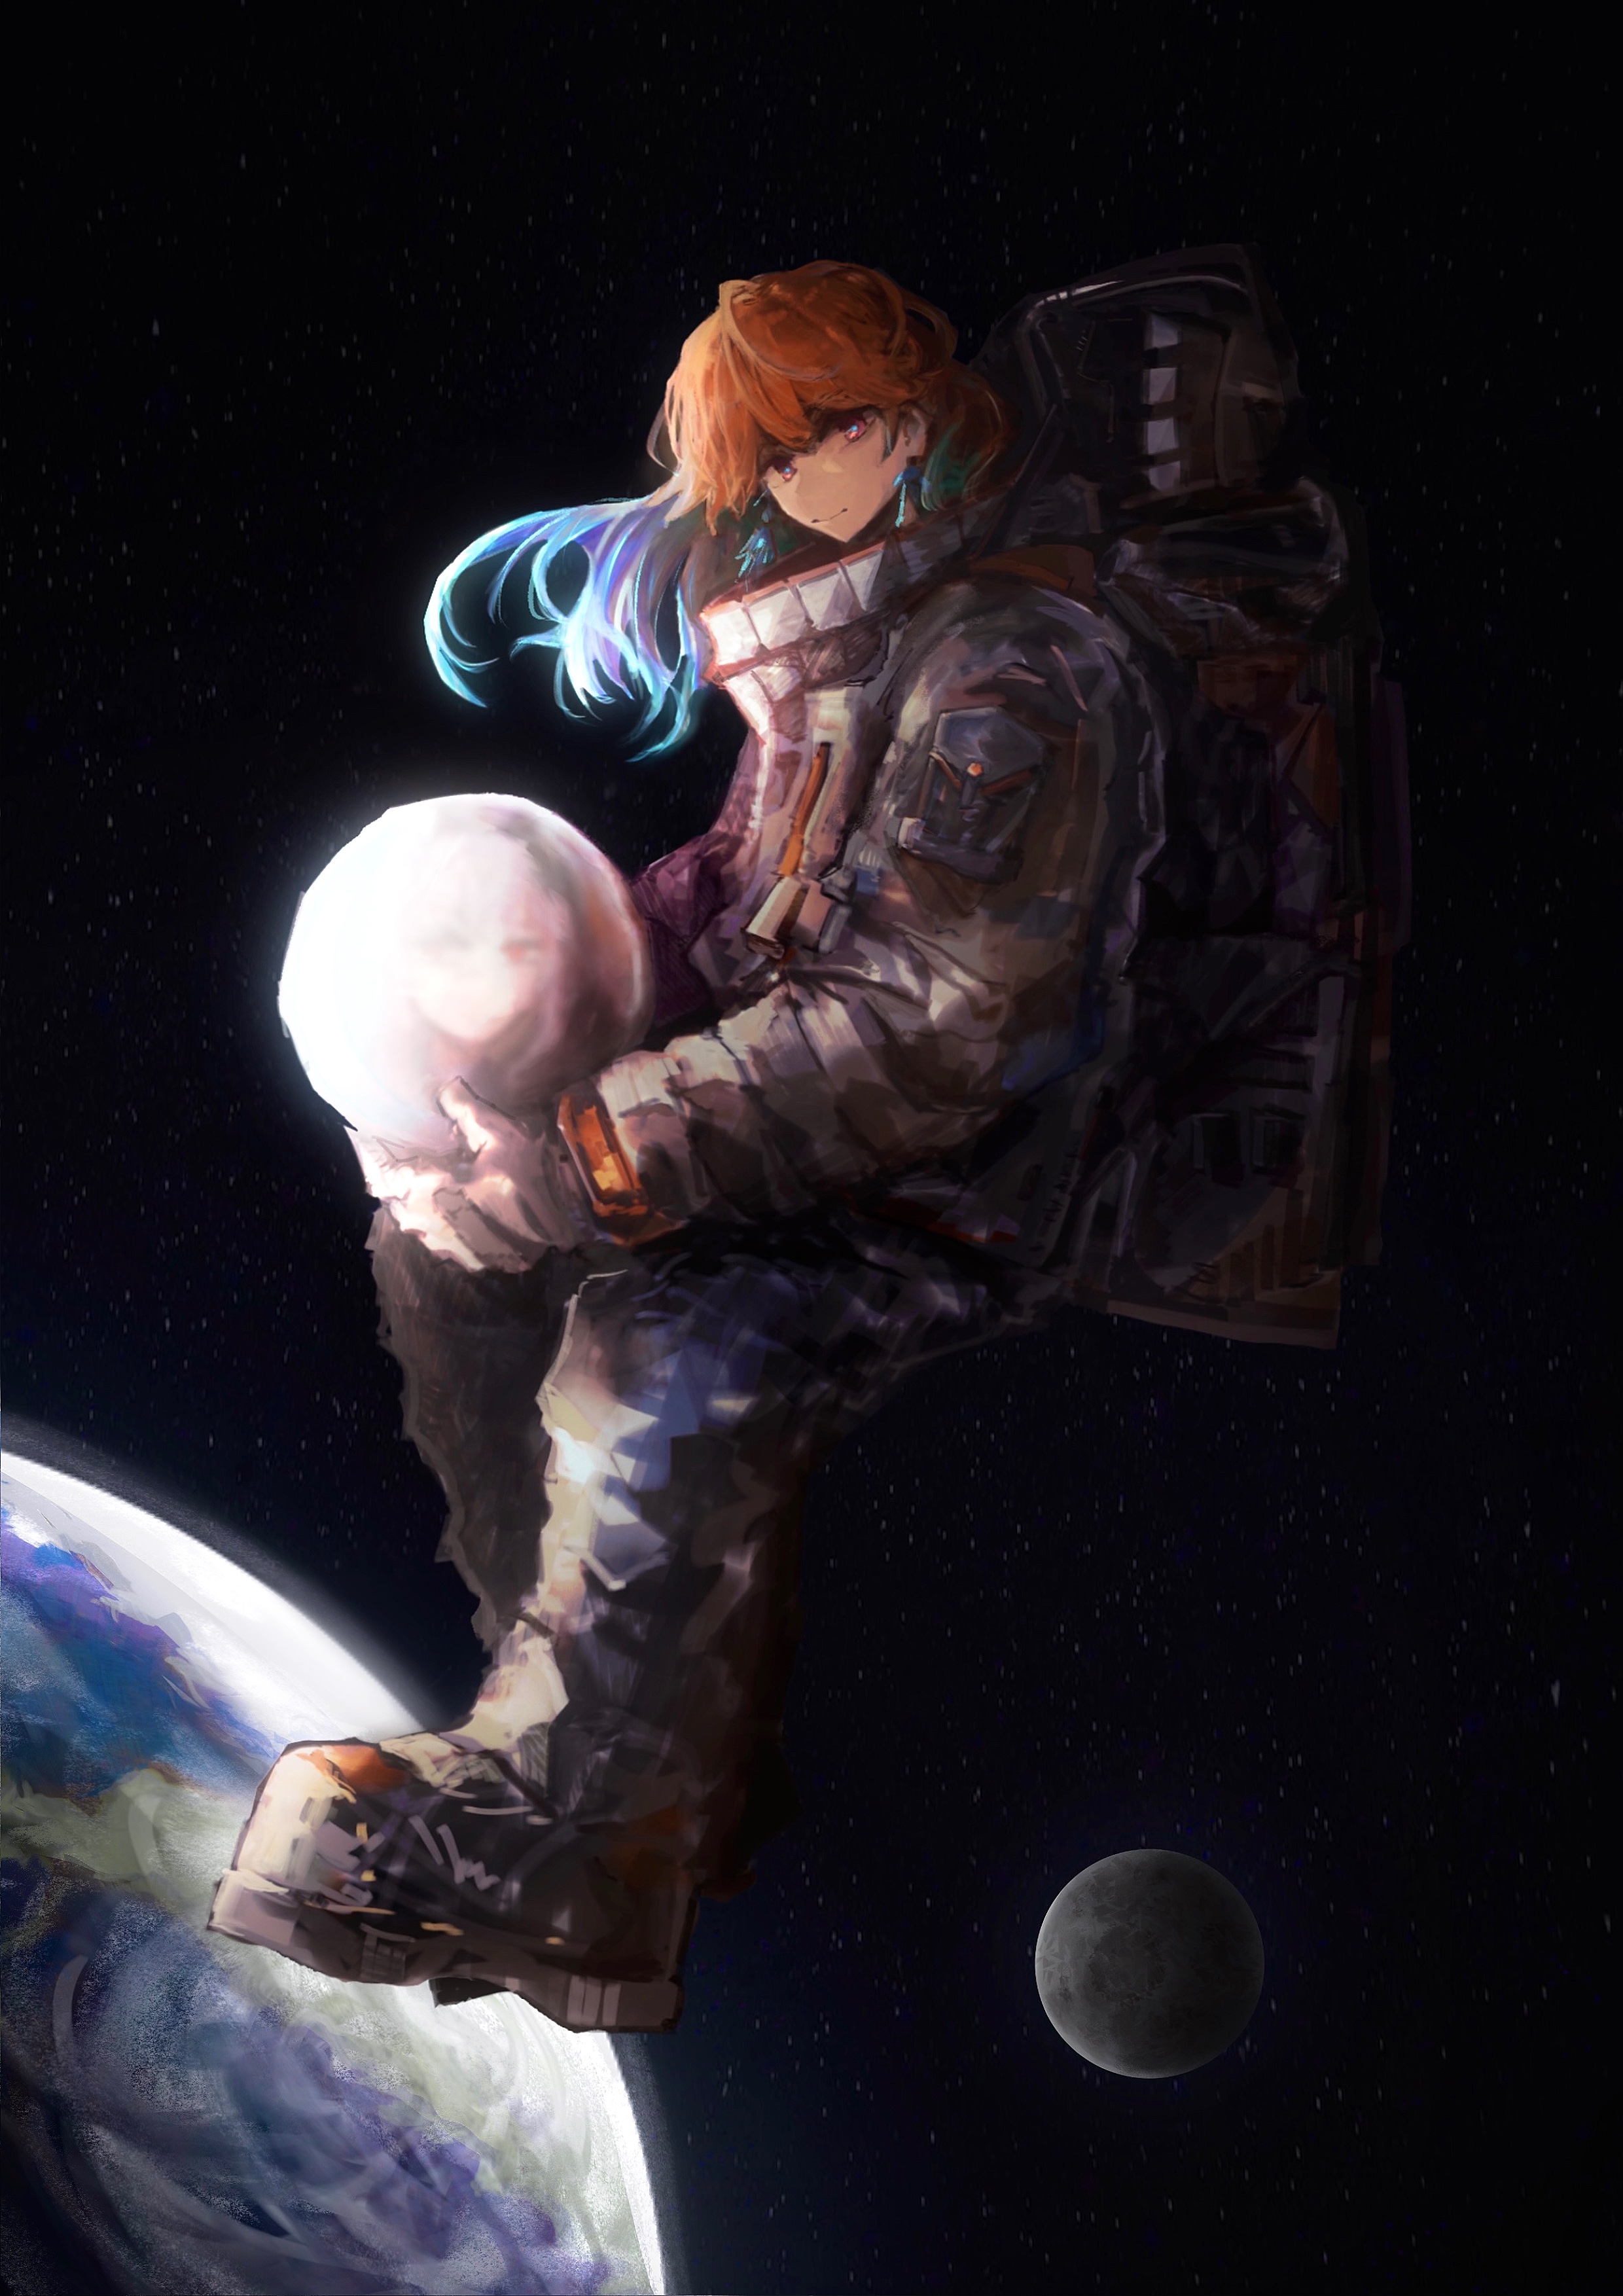 Anime Girl Astronaut : r/aiArt